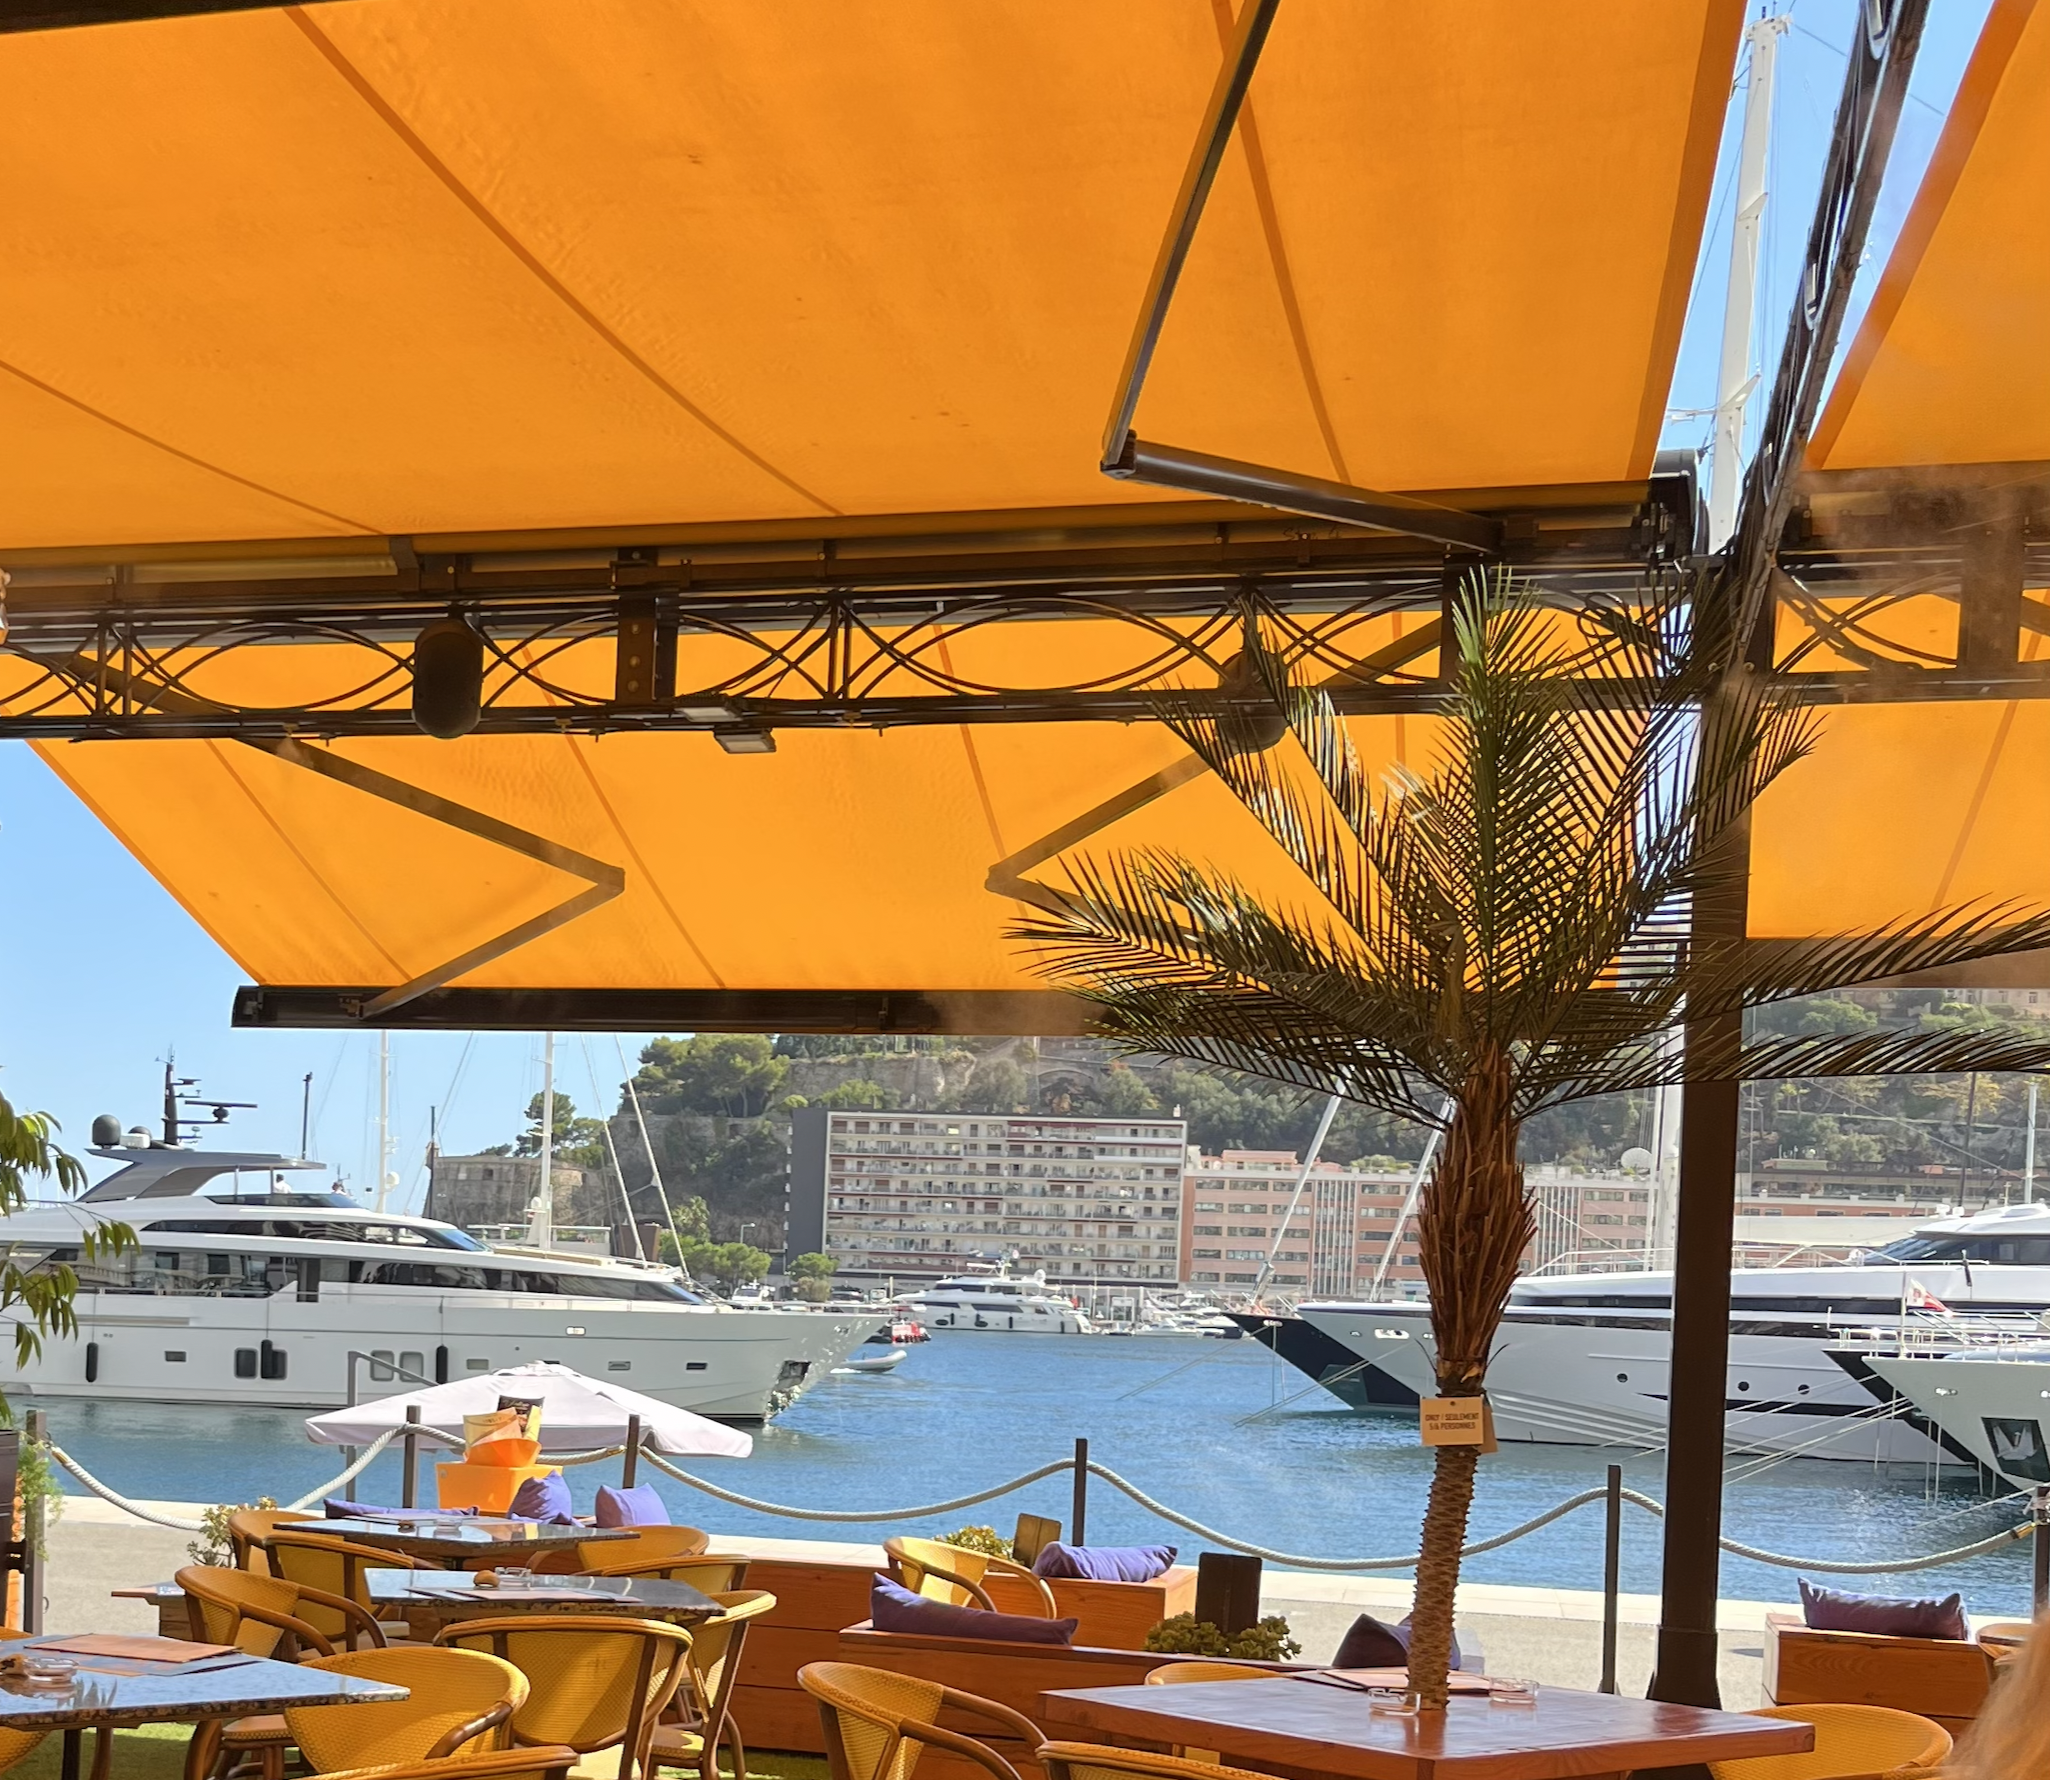 Im Yachthafen von Monaco